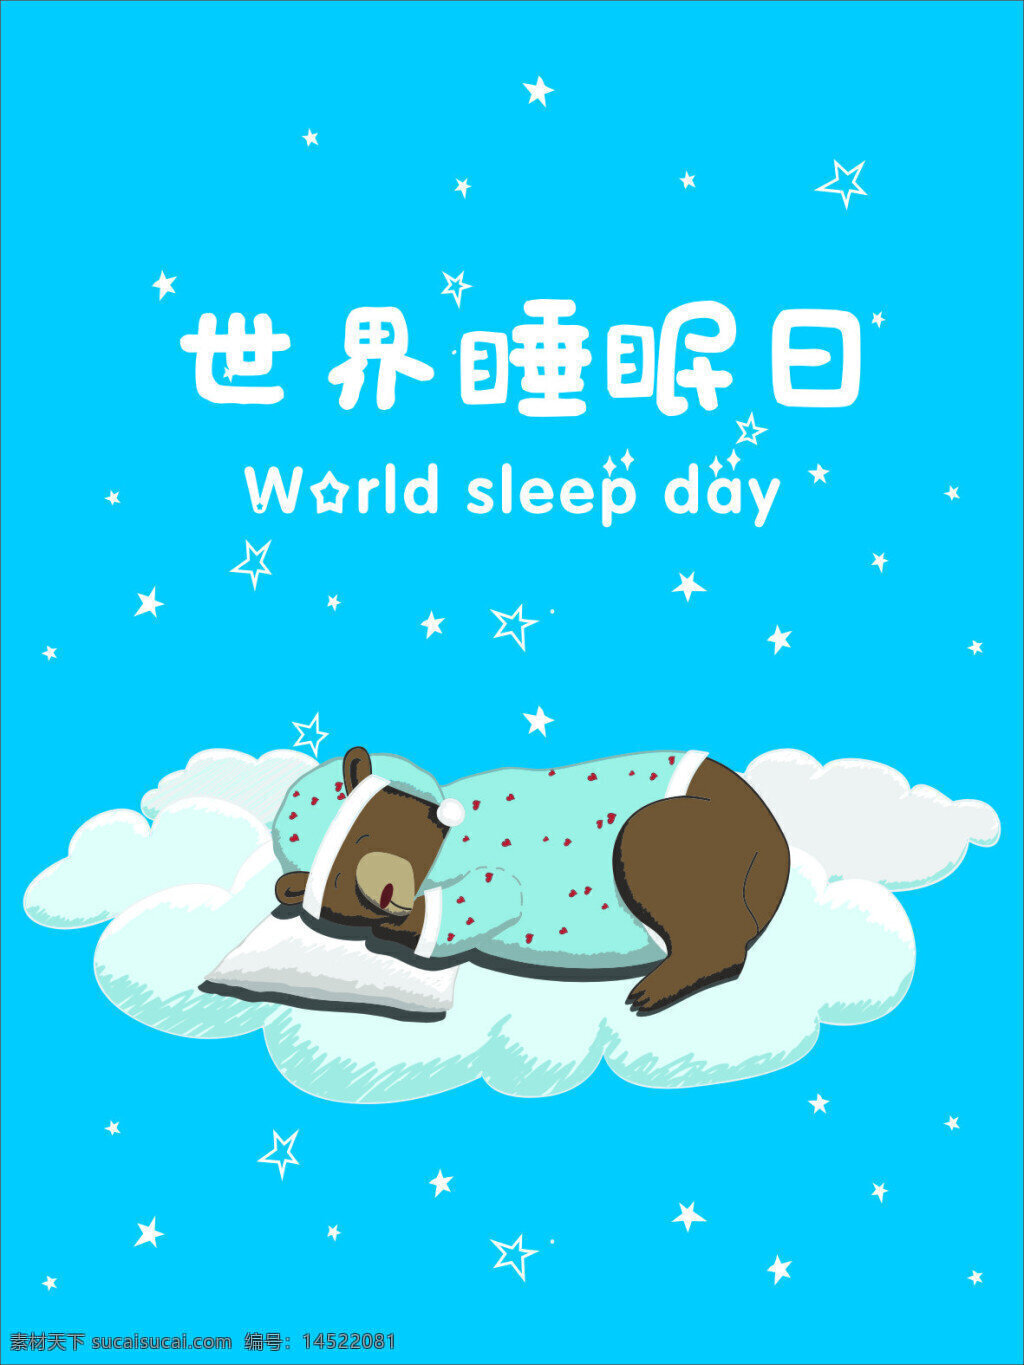 世界睡眠日 世界 睡眠 日 动物海报 卡通动物 动物睡觉海报 星星